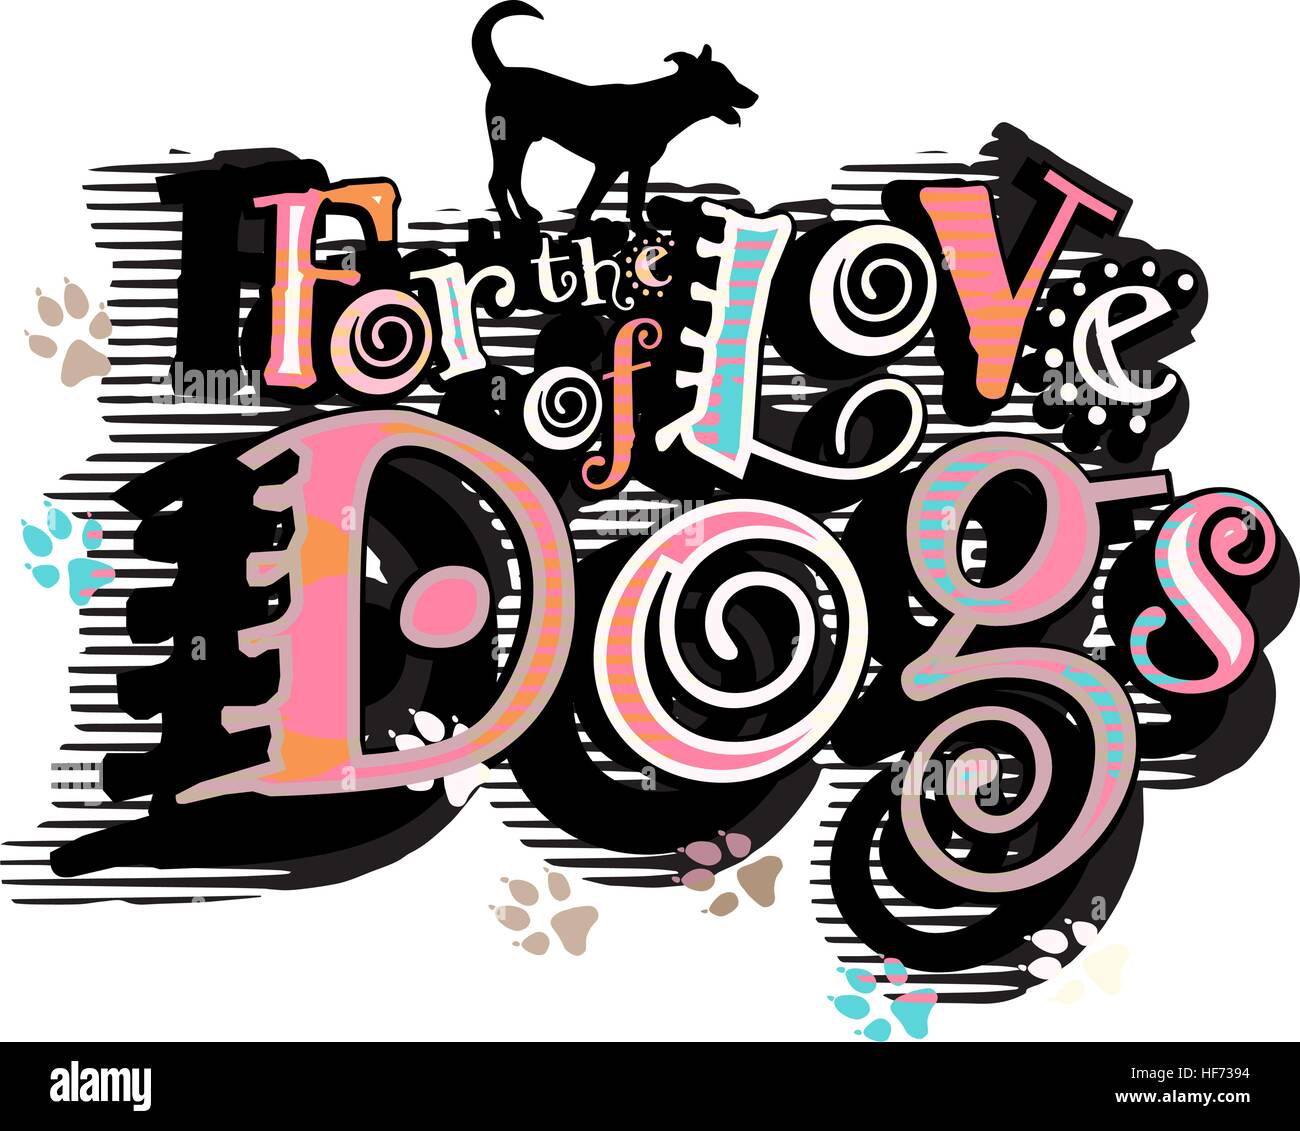 Vektor-Illustration eines Hund-liebevollen Slogans Stock Vektor